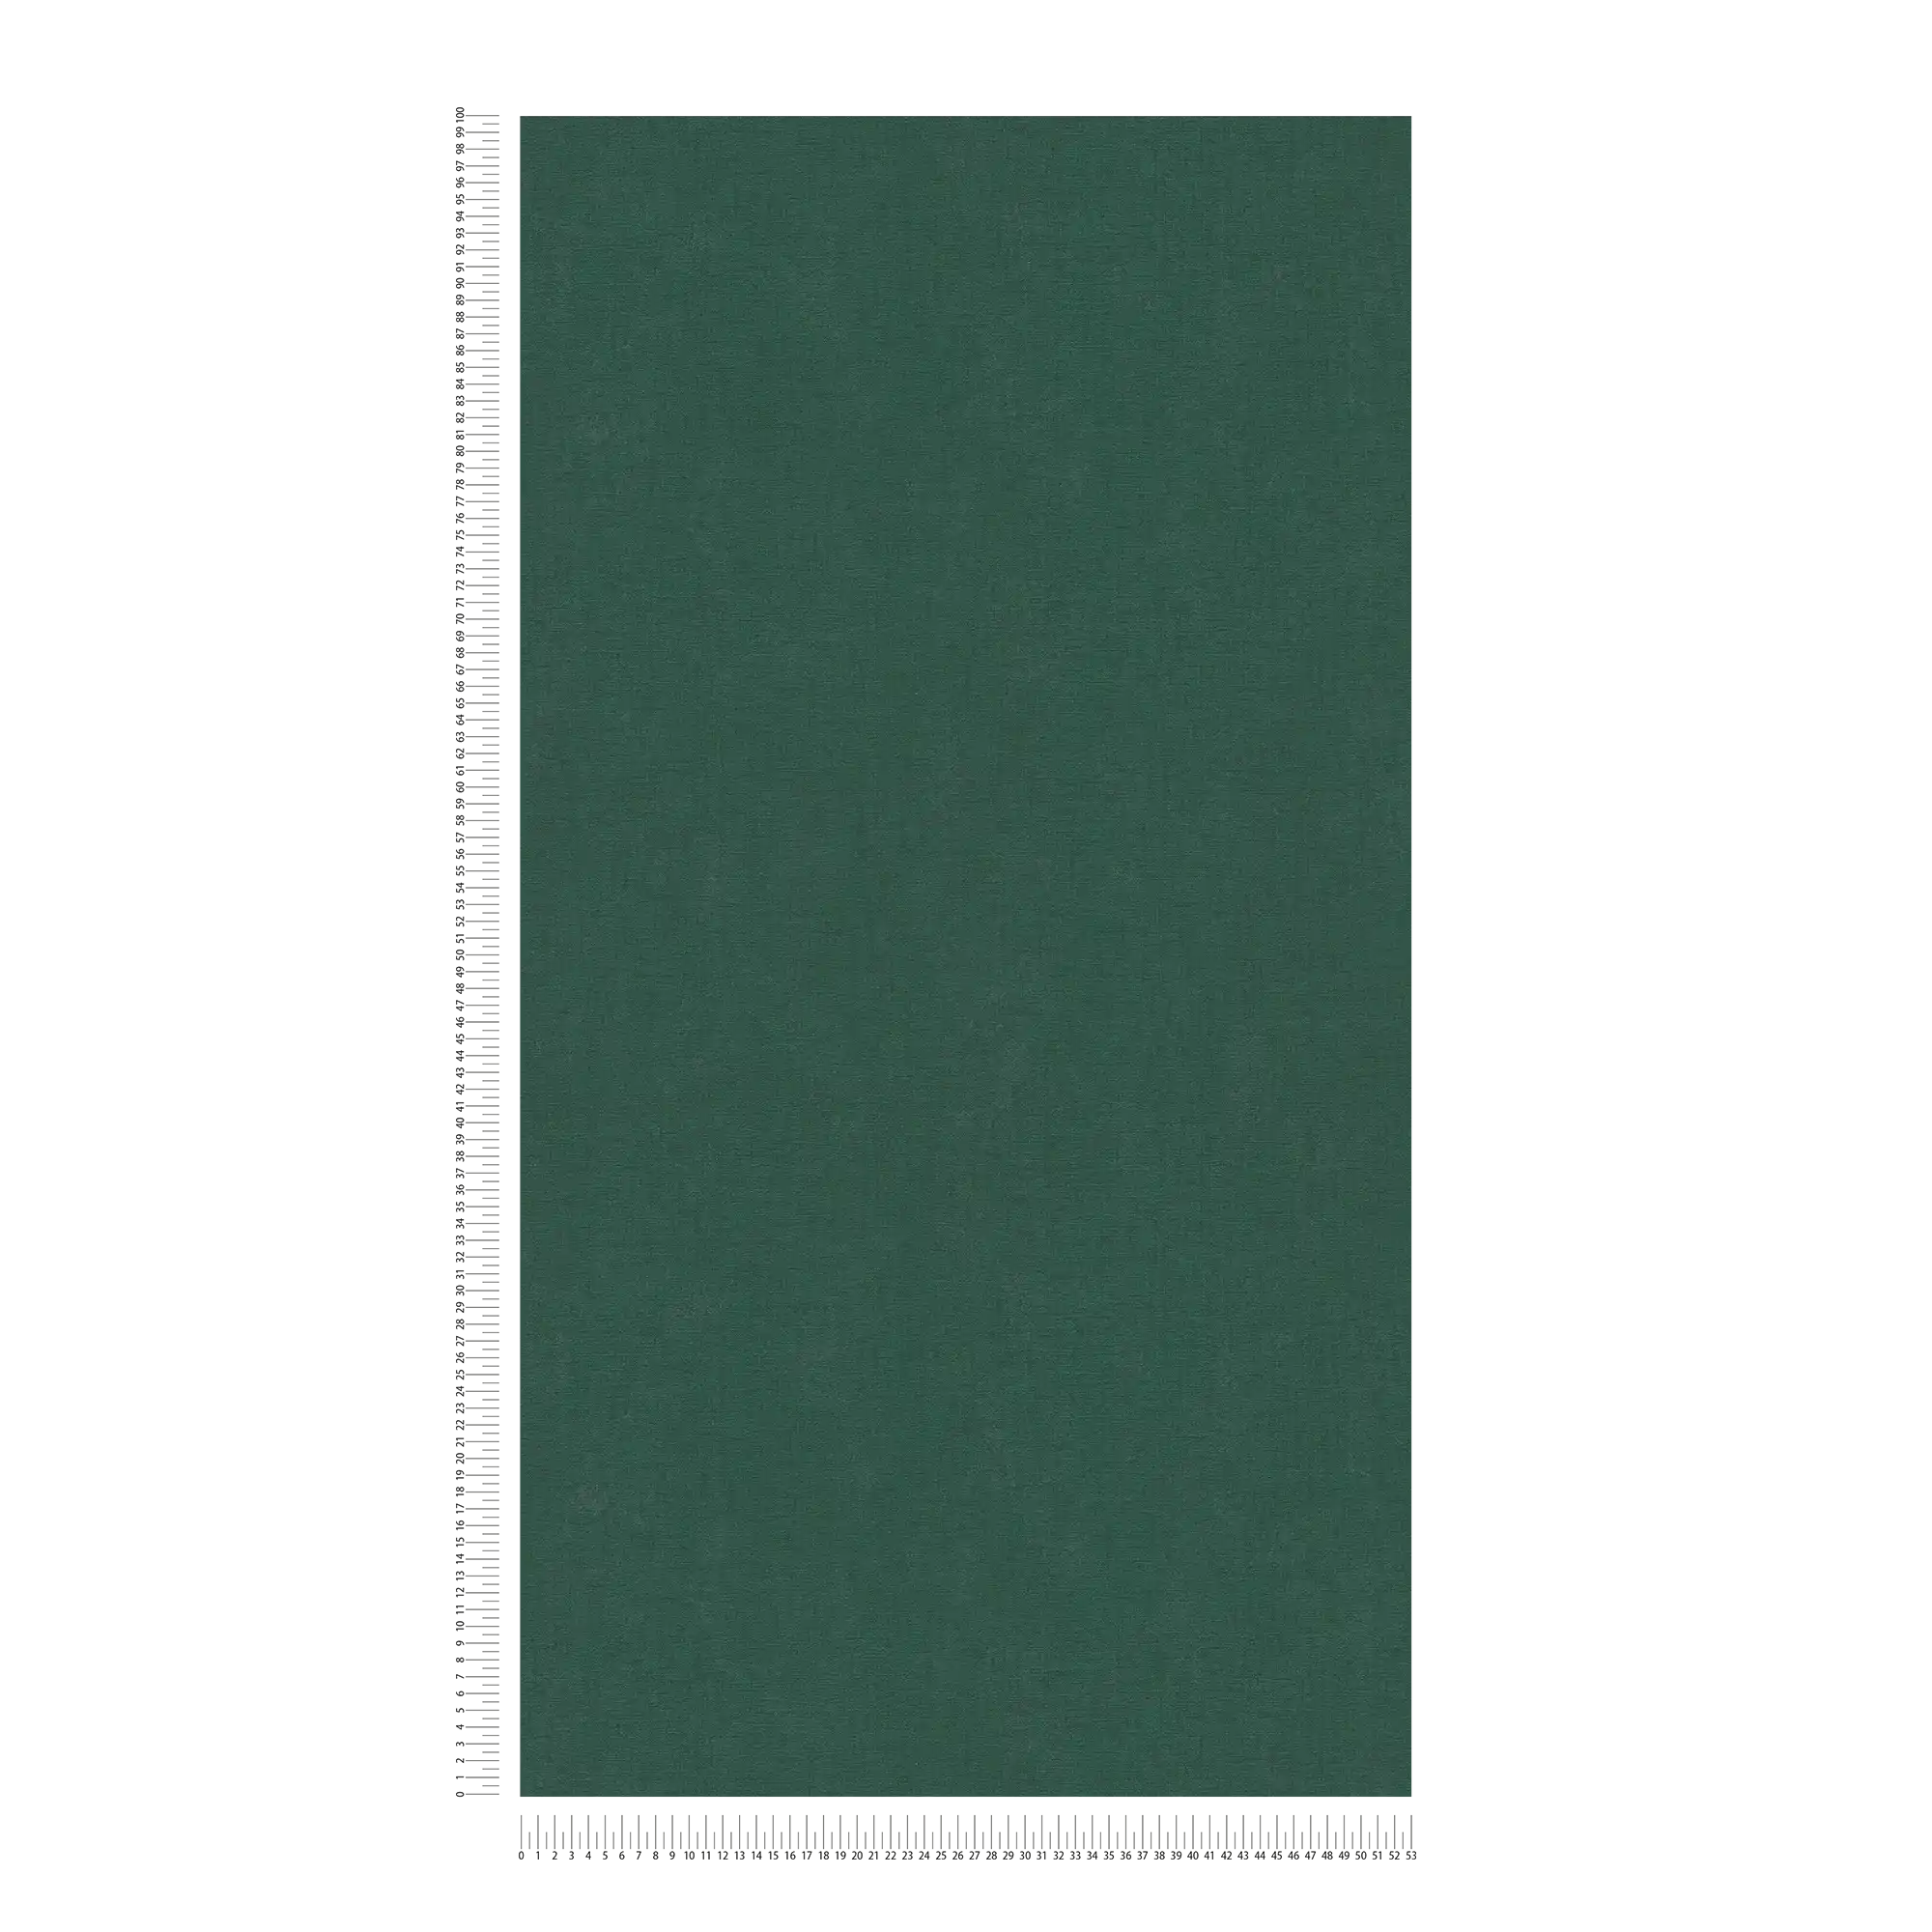             Einfarbige Vliestapete mit leichter Struktur – Grün, Dunkelgrün
        